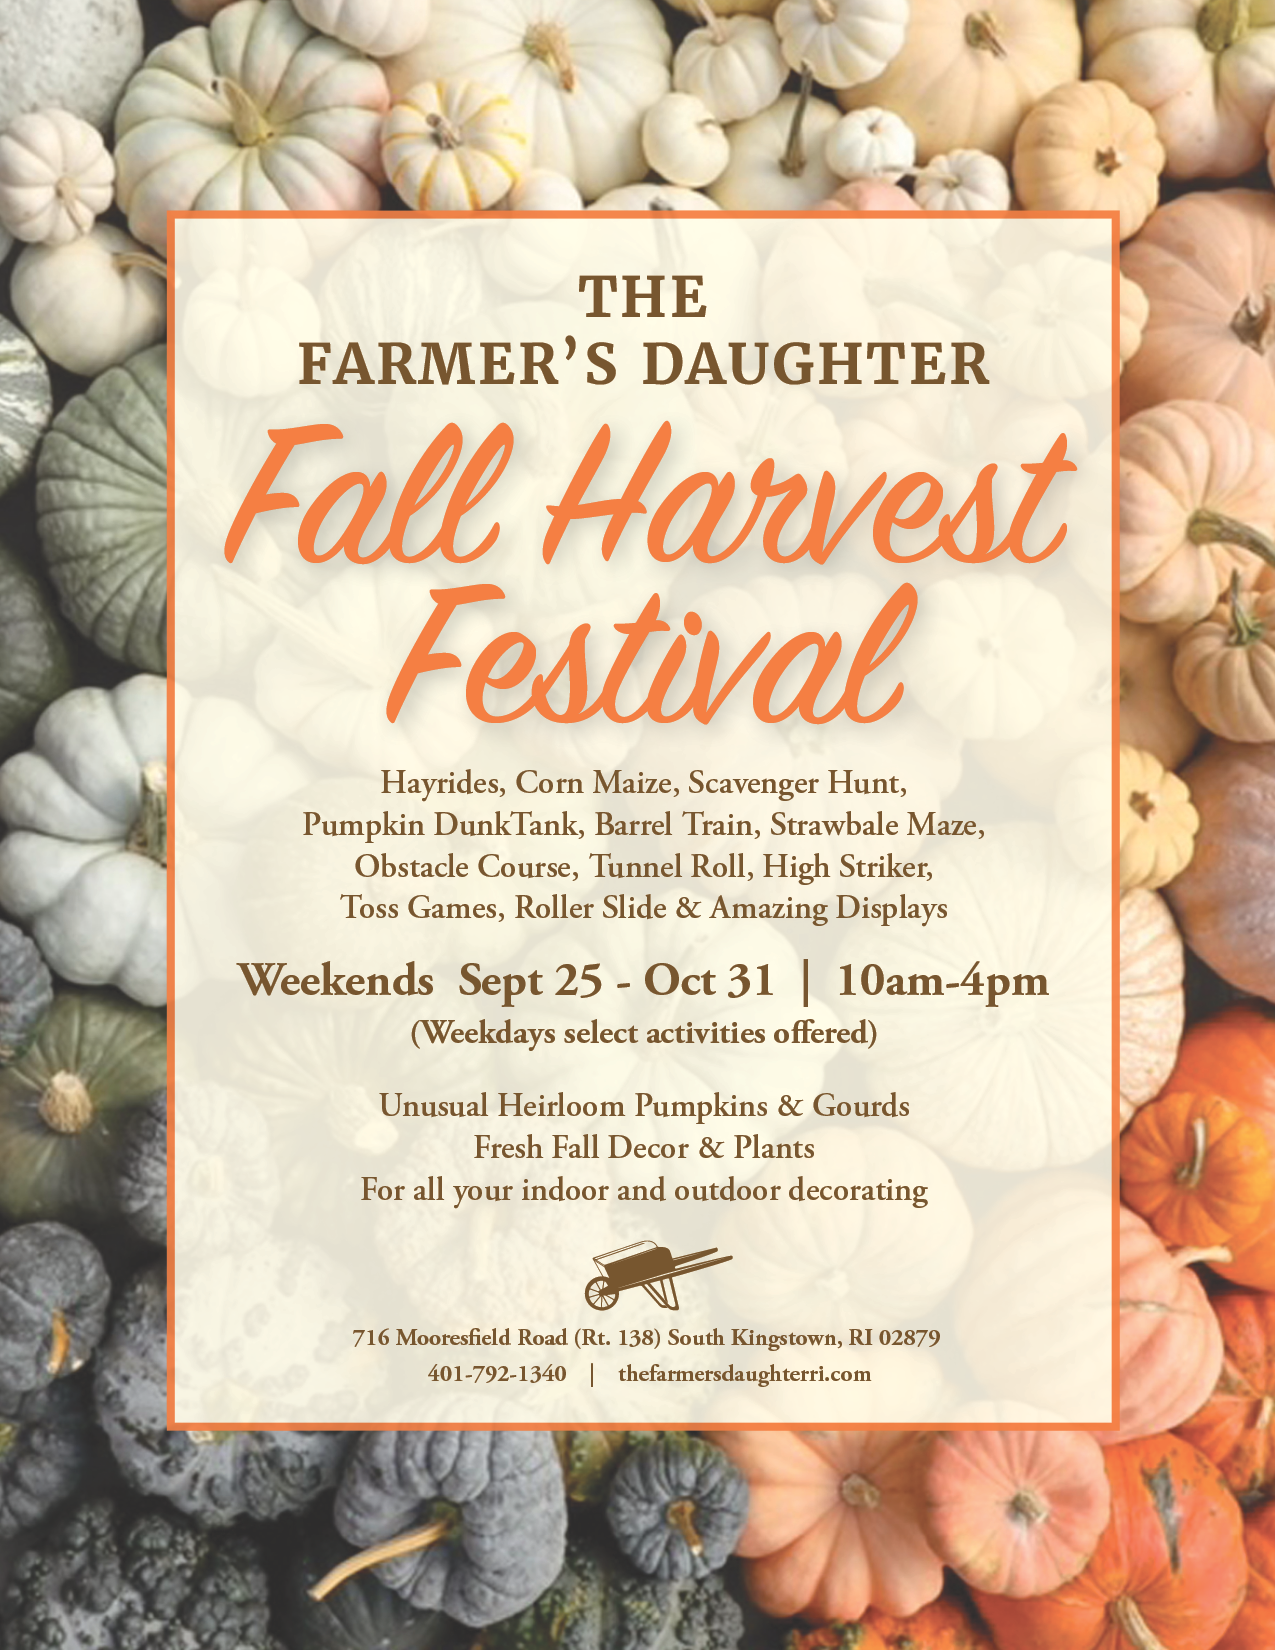 The Farmer's Daughter Fall Harvest Festival